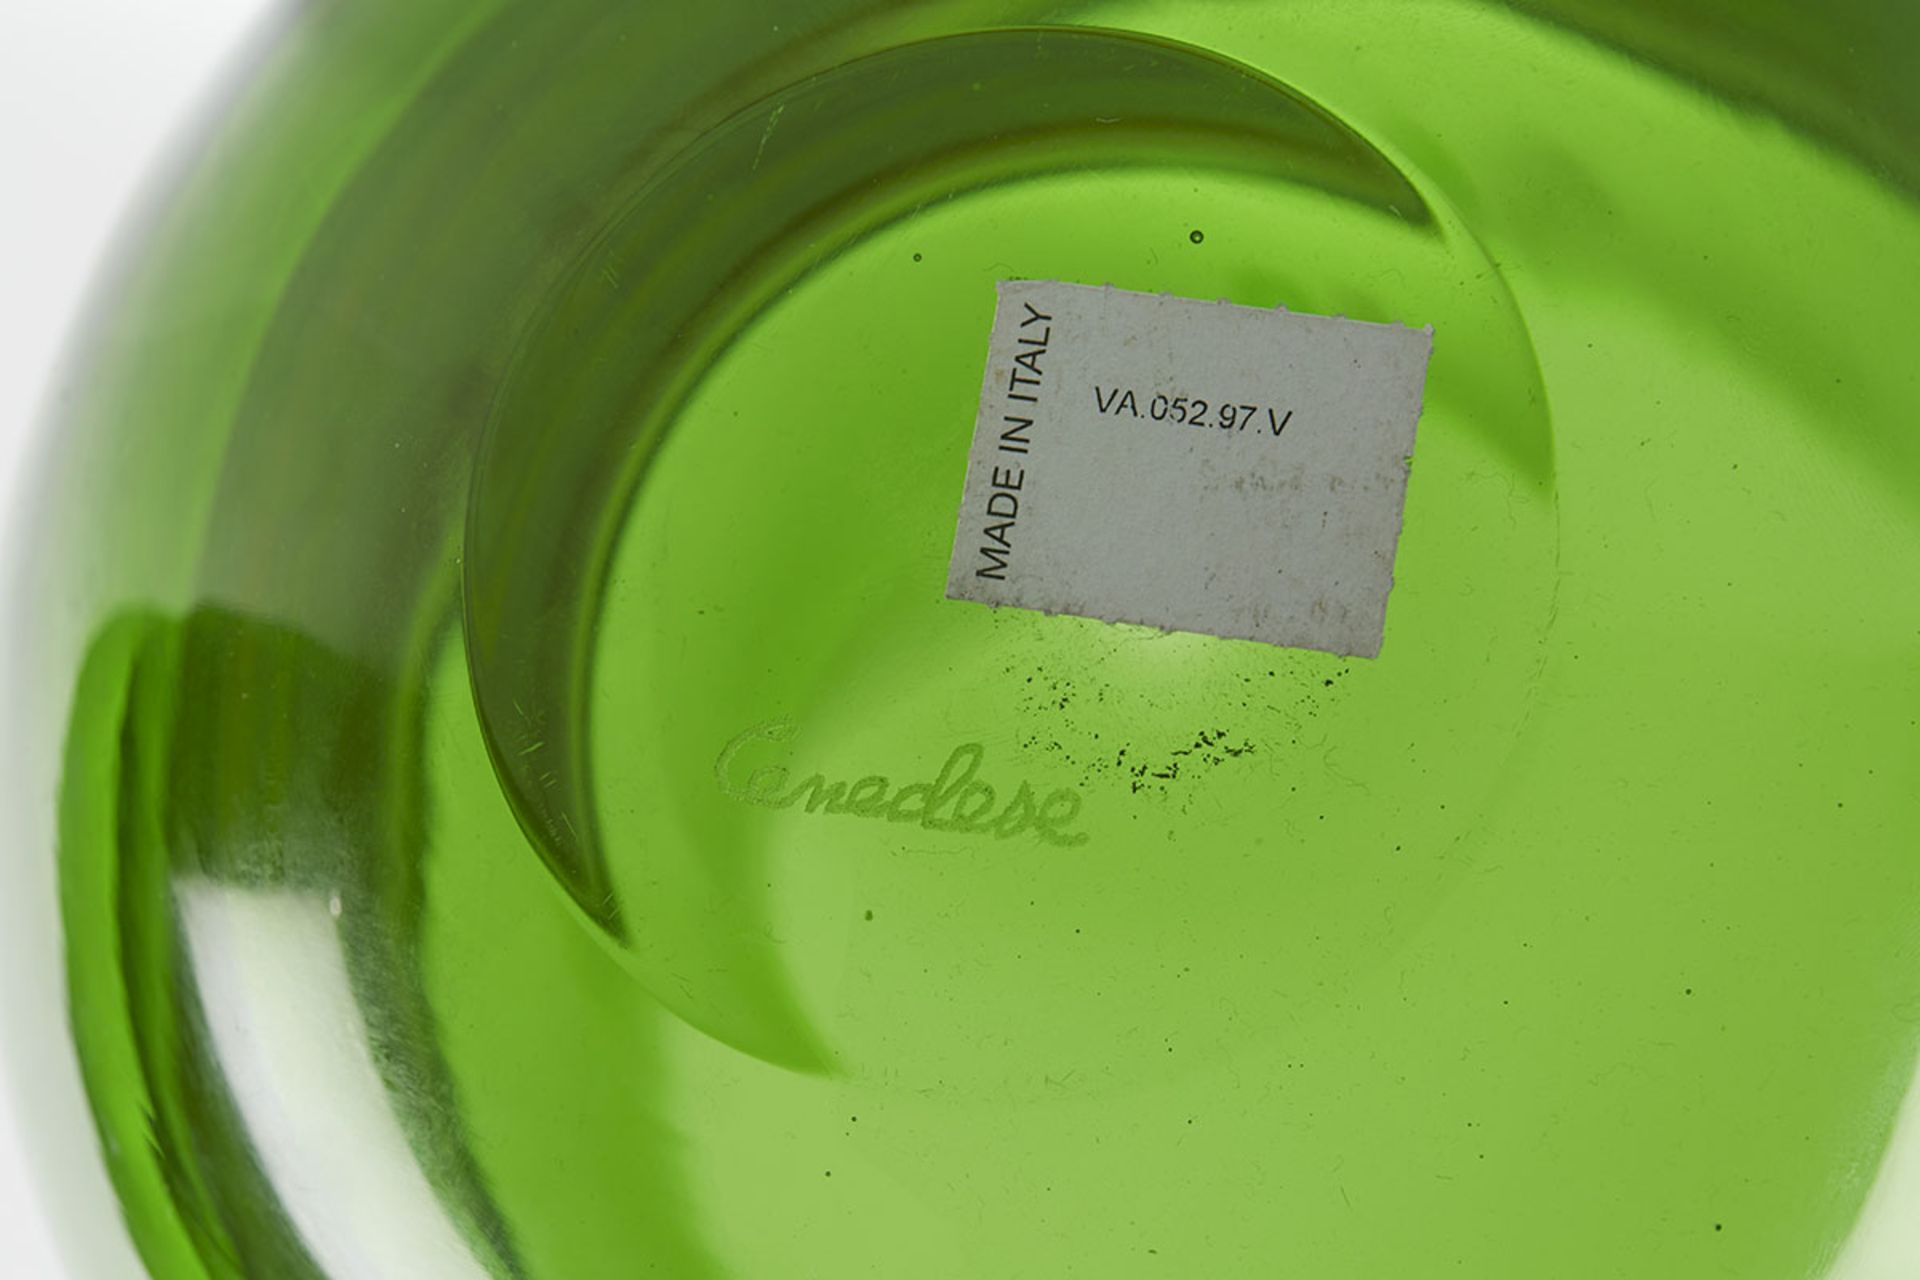 Italian Murano Gino Cenedese Signed Swirl Design Green Art Glass Vase - Image 8 of 9